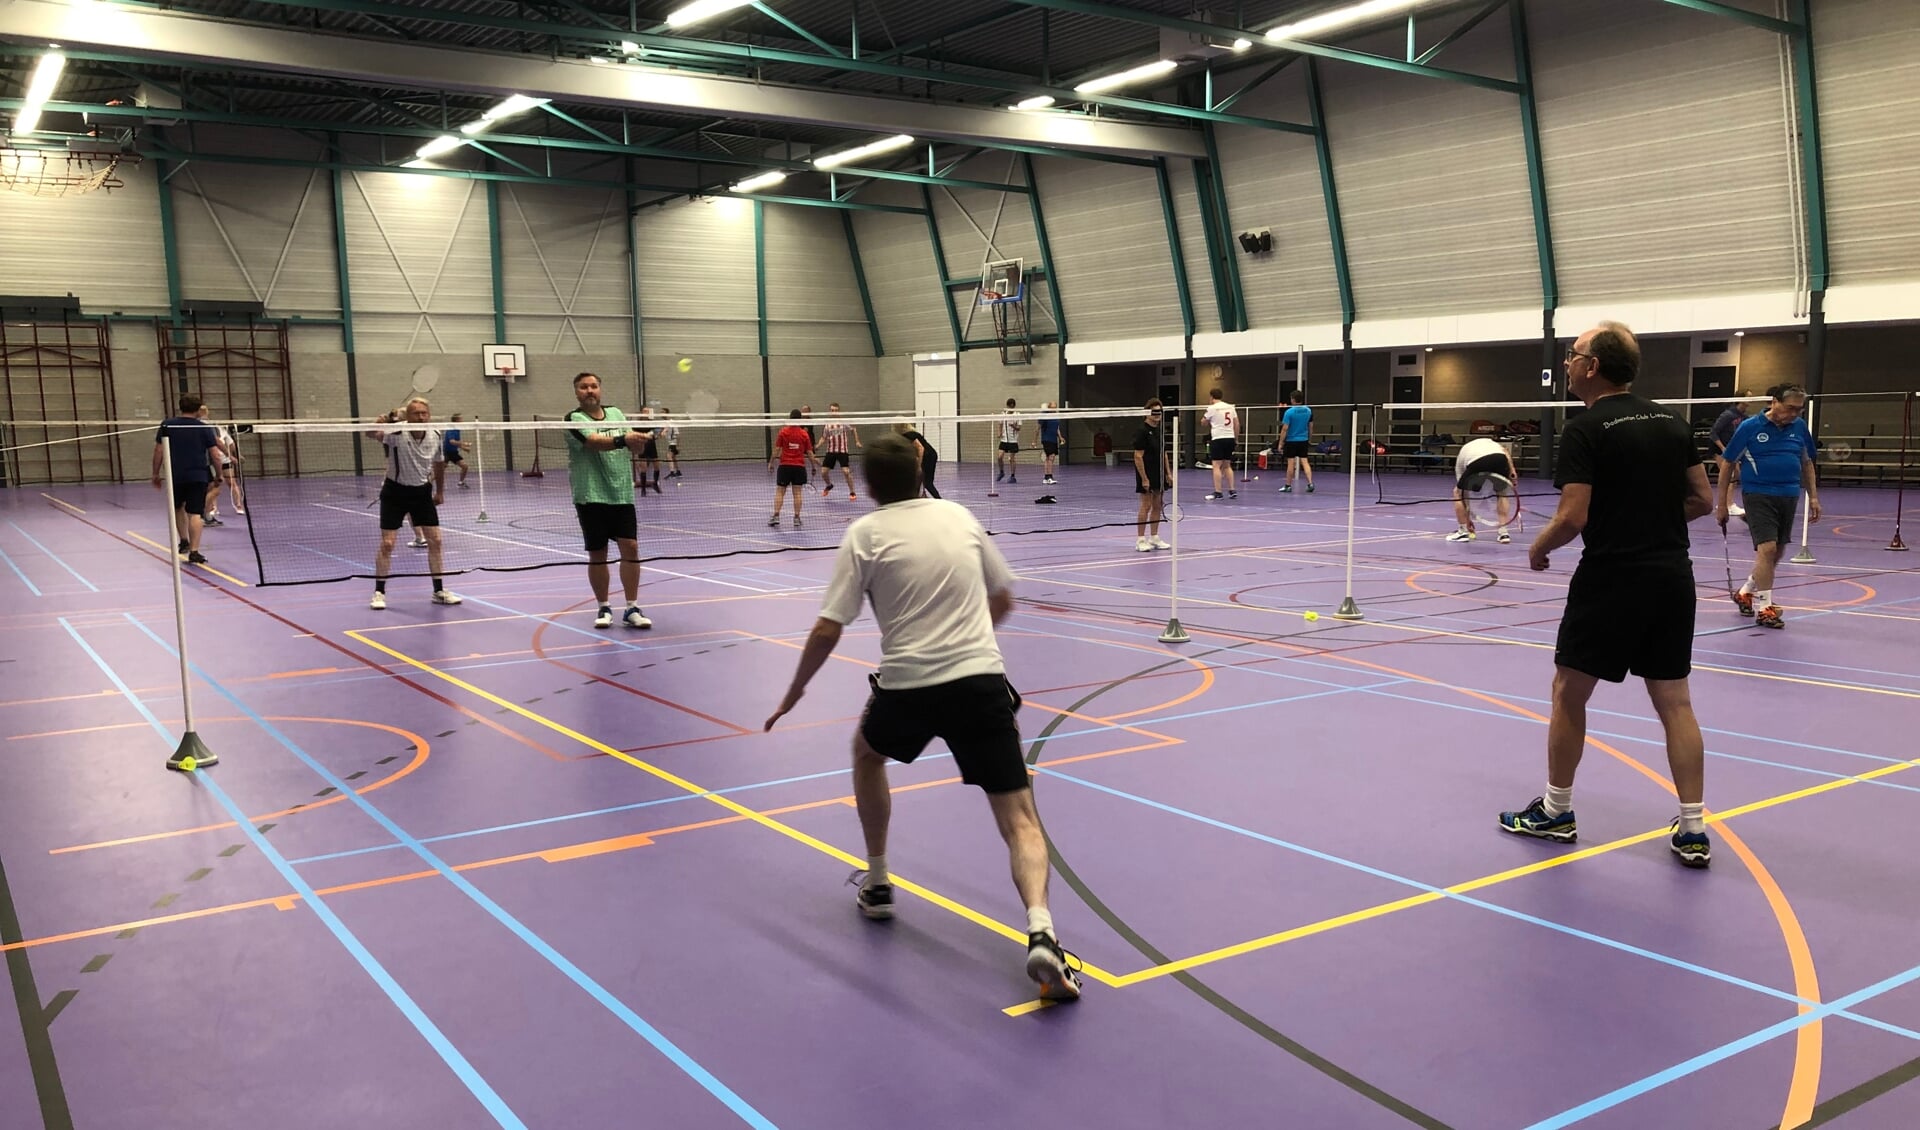 Badminton Club Lieshout hoopt binnenkort weer te kunnen sporten.